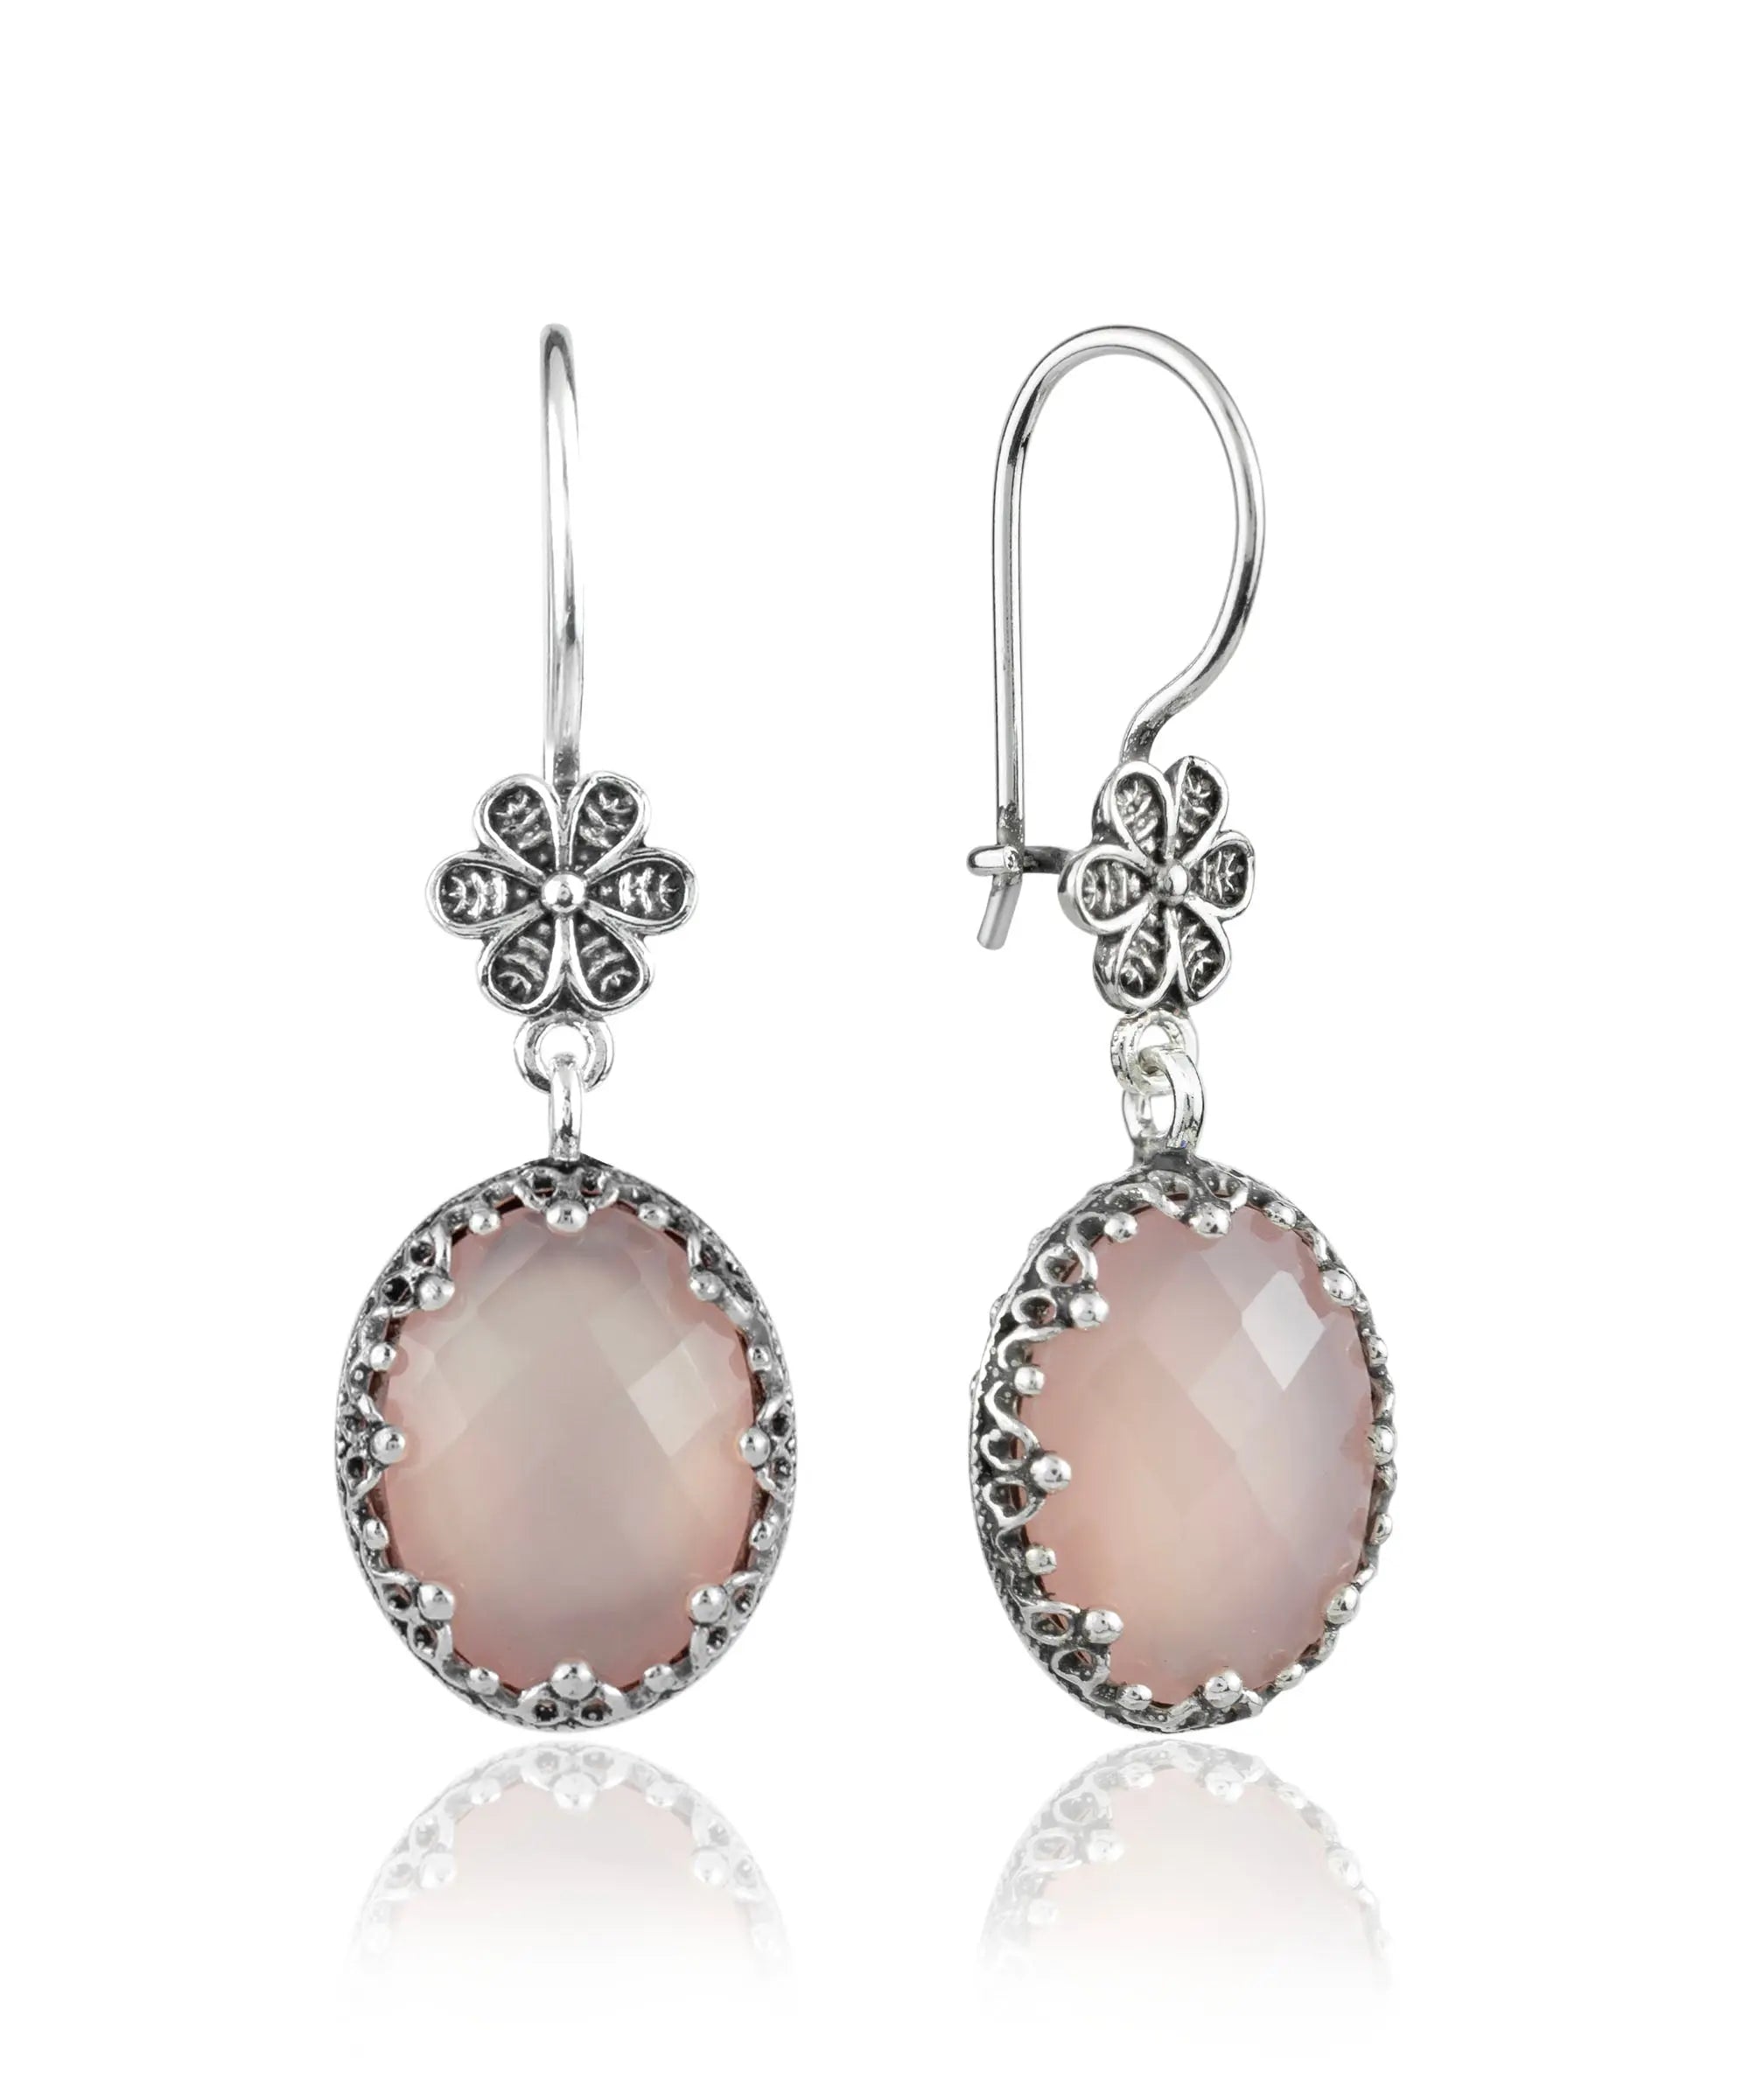 Dangling Stone Pendant Earrings - Pink Gems - Ladies